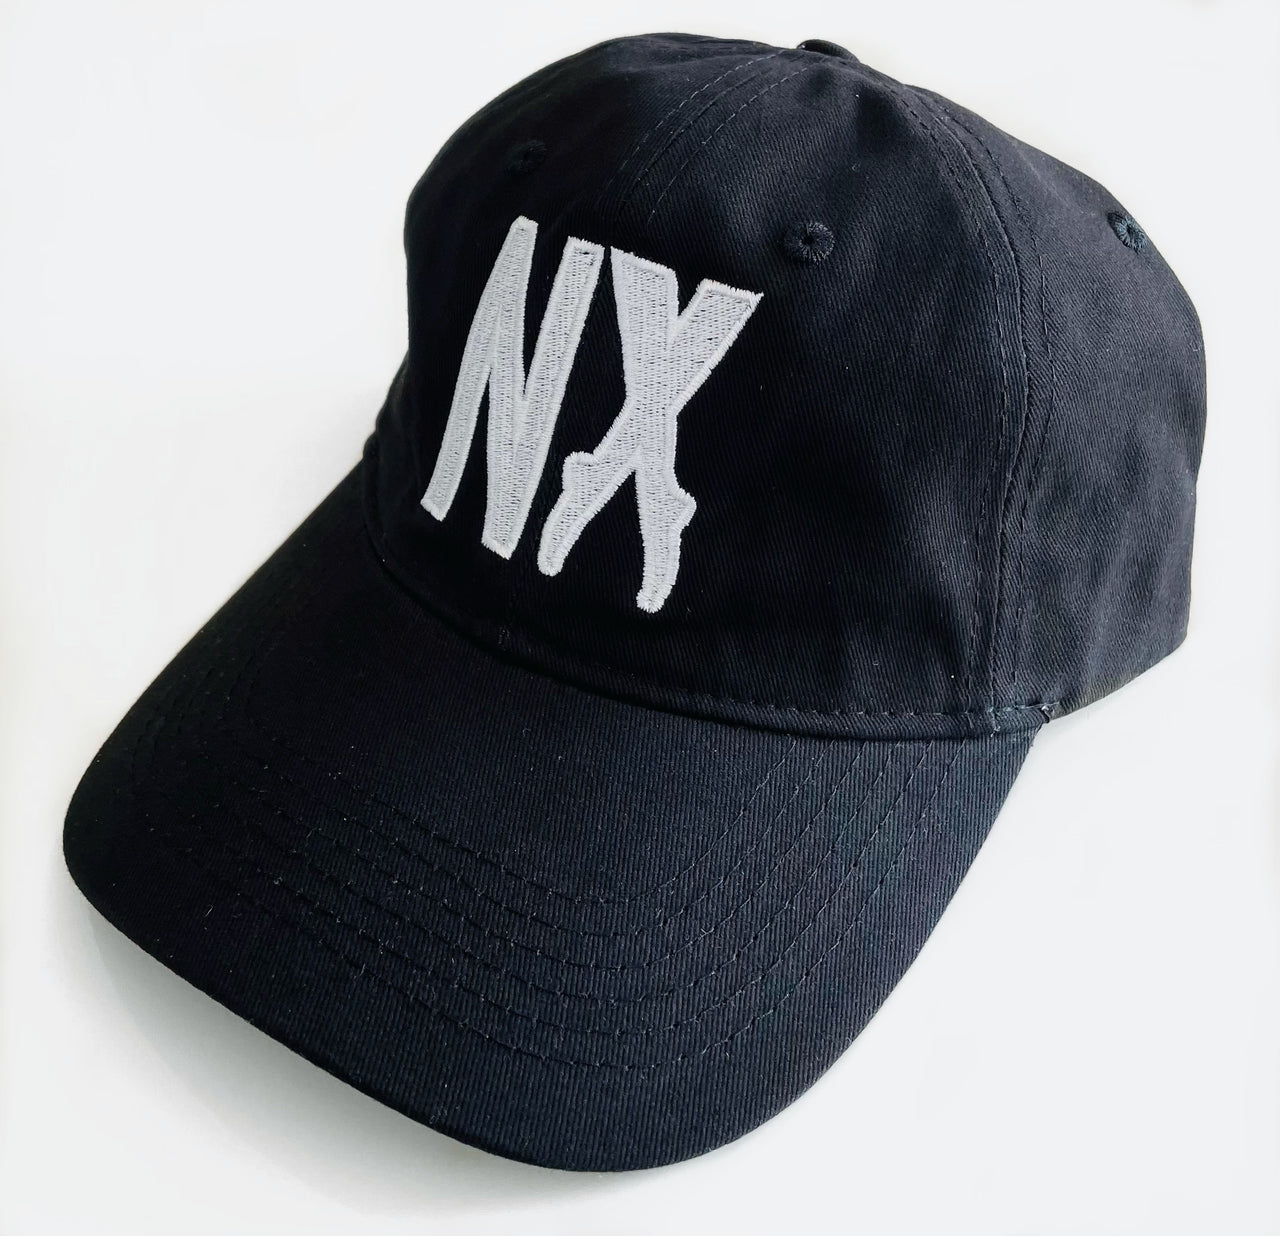 NX Baseball Cap